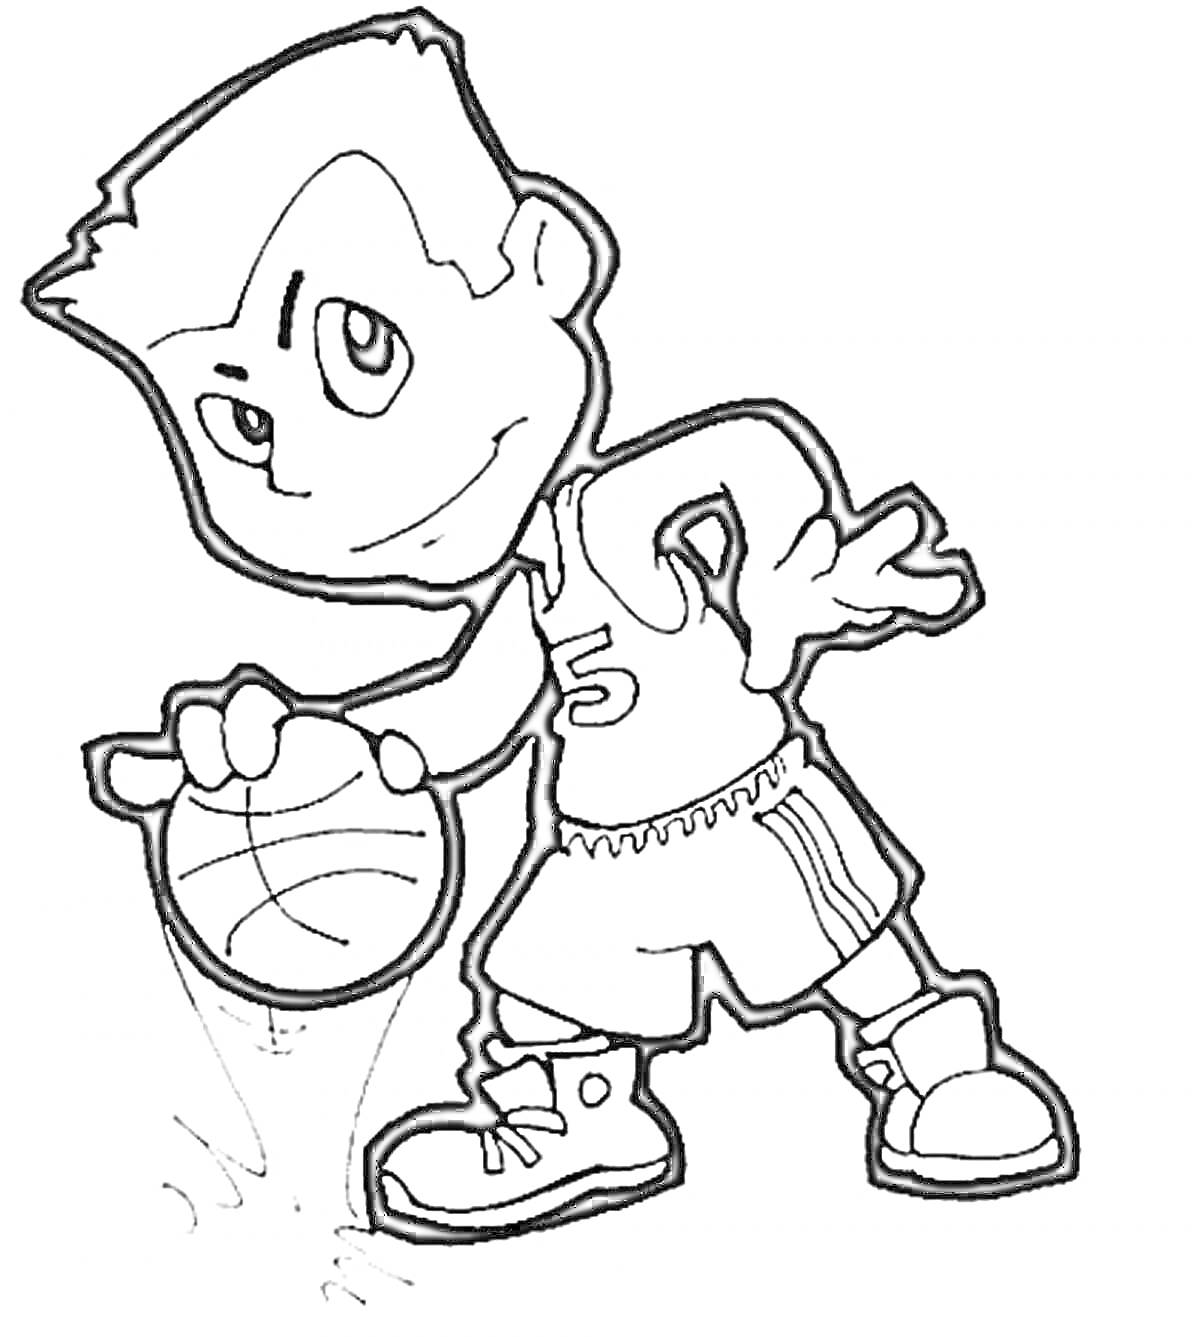 Раскраска мальчик играет в баскетбол, мяч, баскетбольная форма, кроссовки